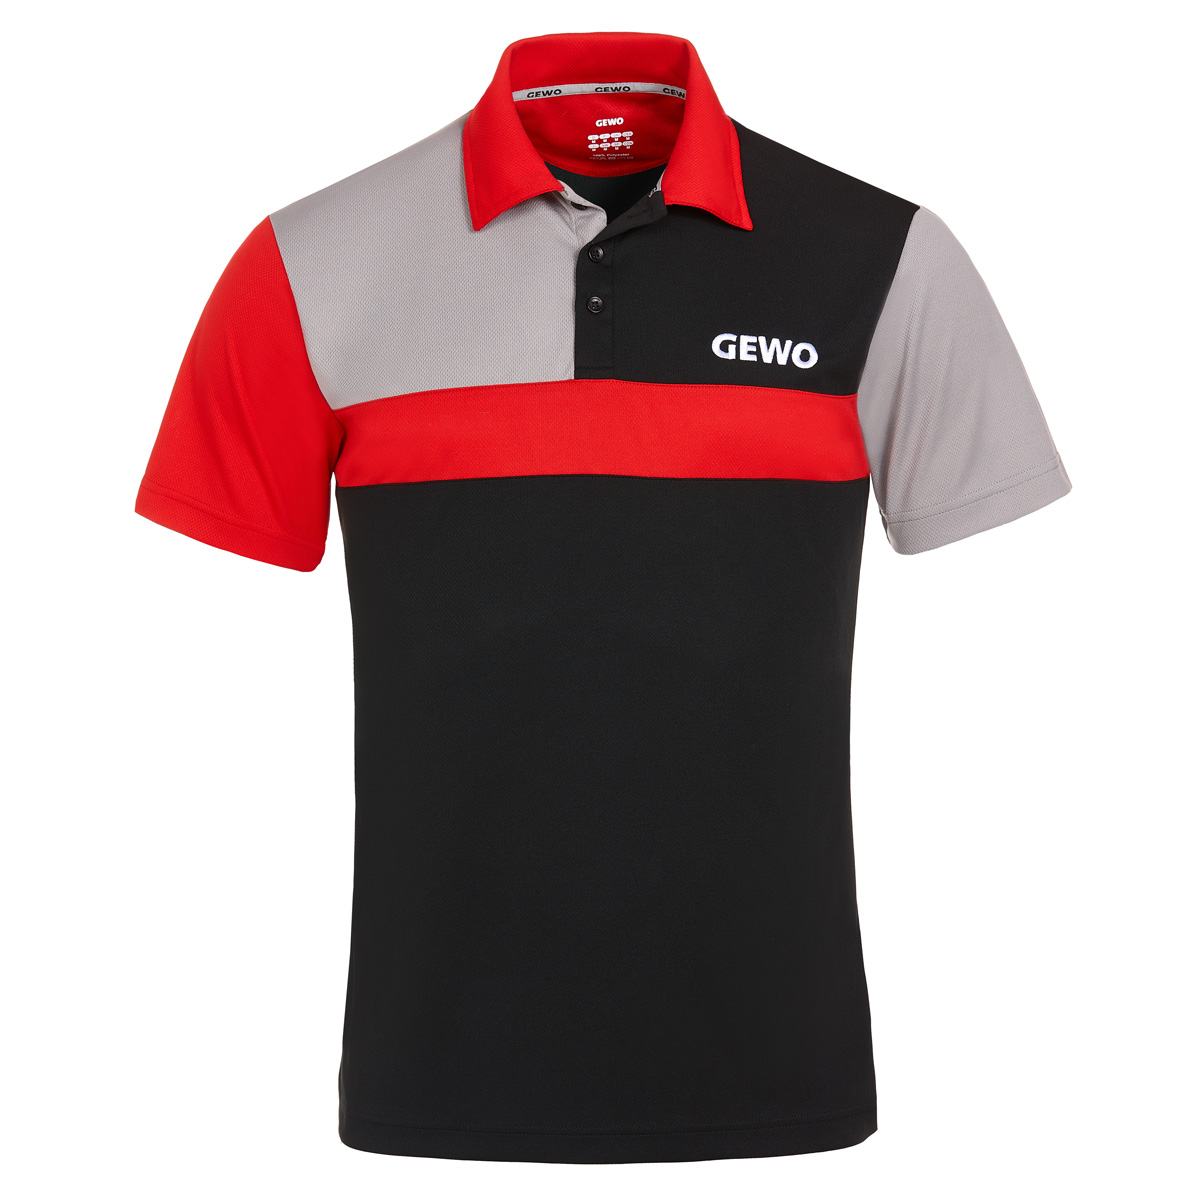 GEWO Shirt Ravenna black/red XS